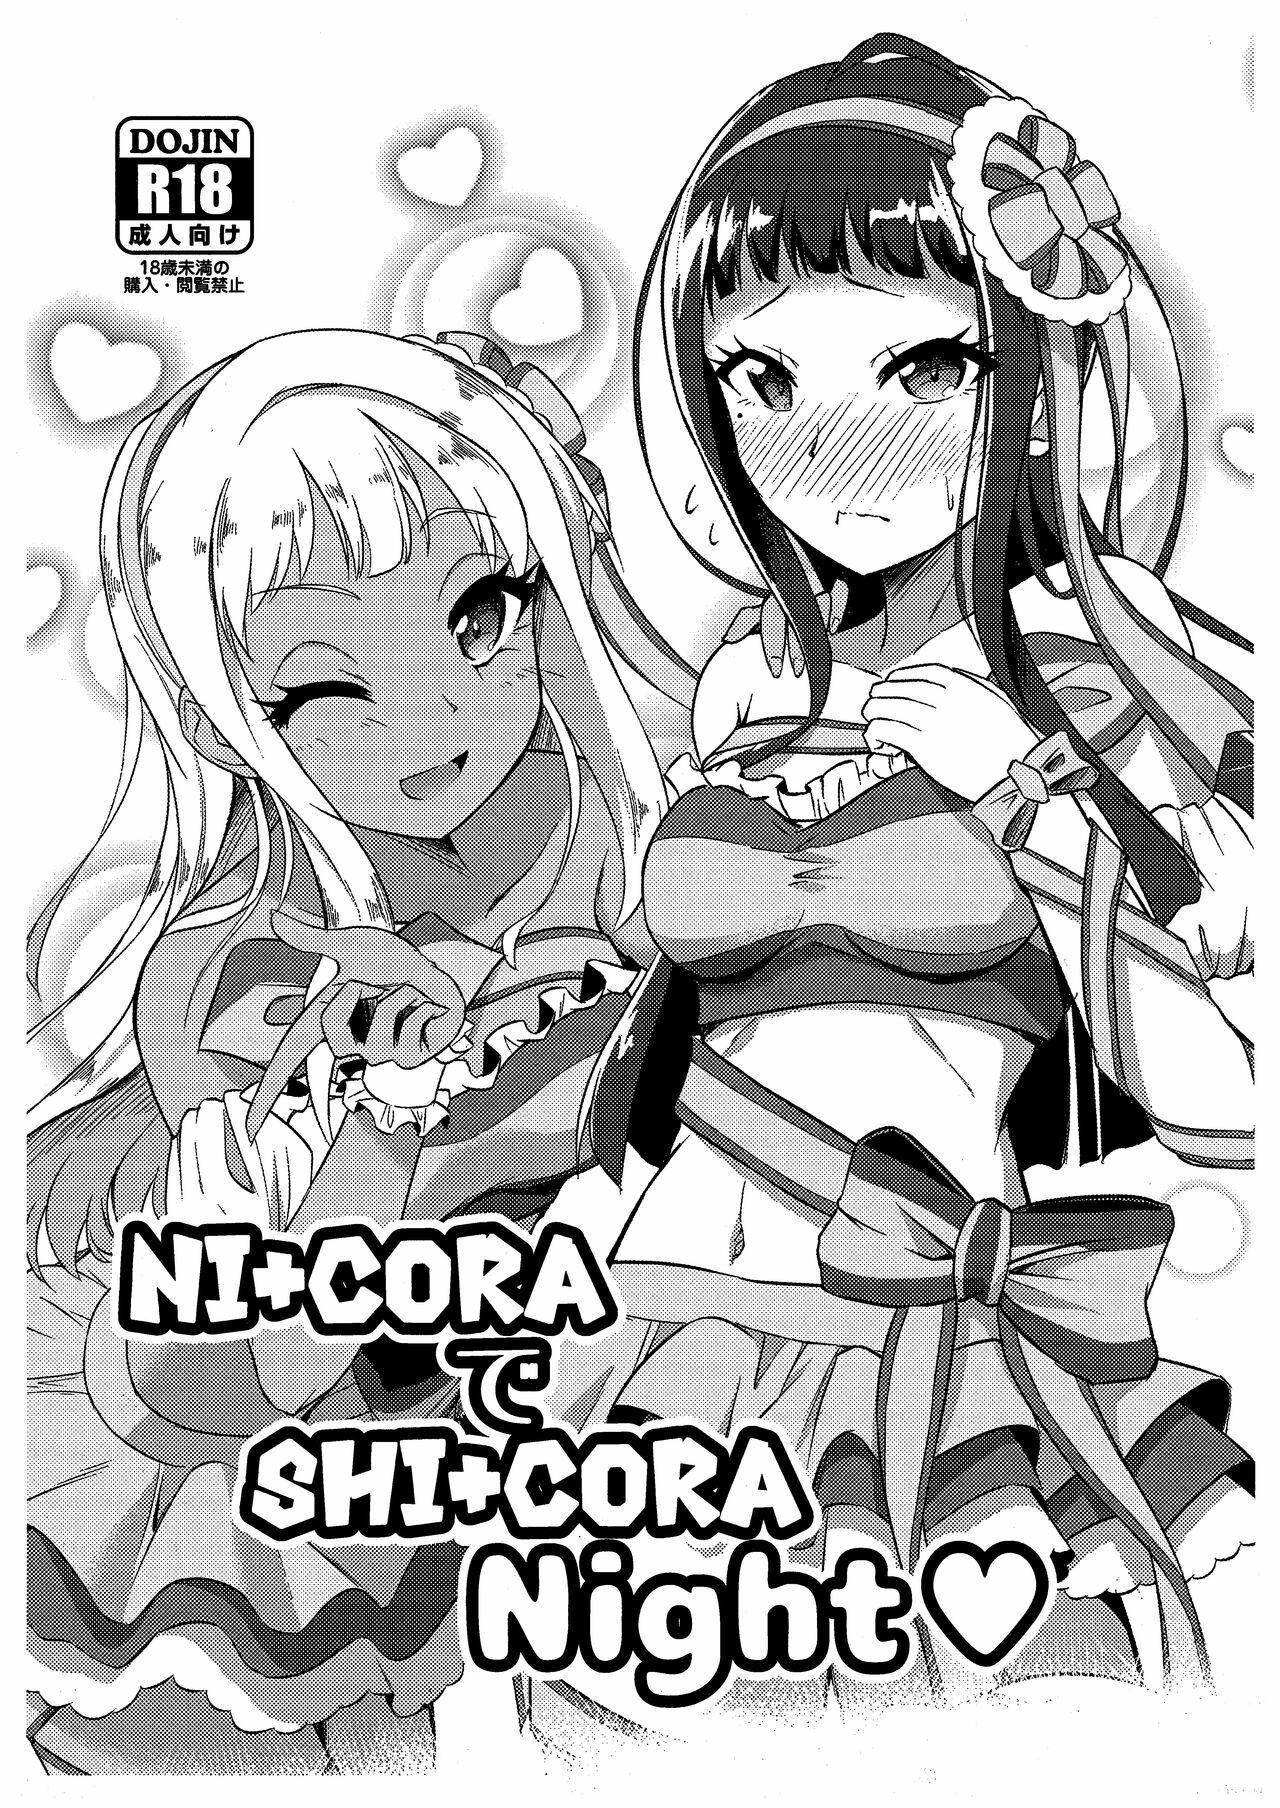 Fuck Com NI+CORA de SHI+CORA Night - Tokyo 7th sisters Kiss - Picture 1